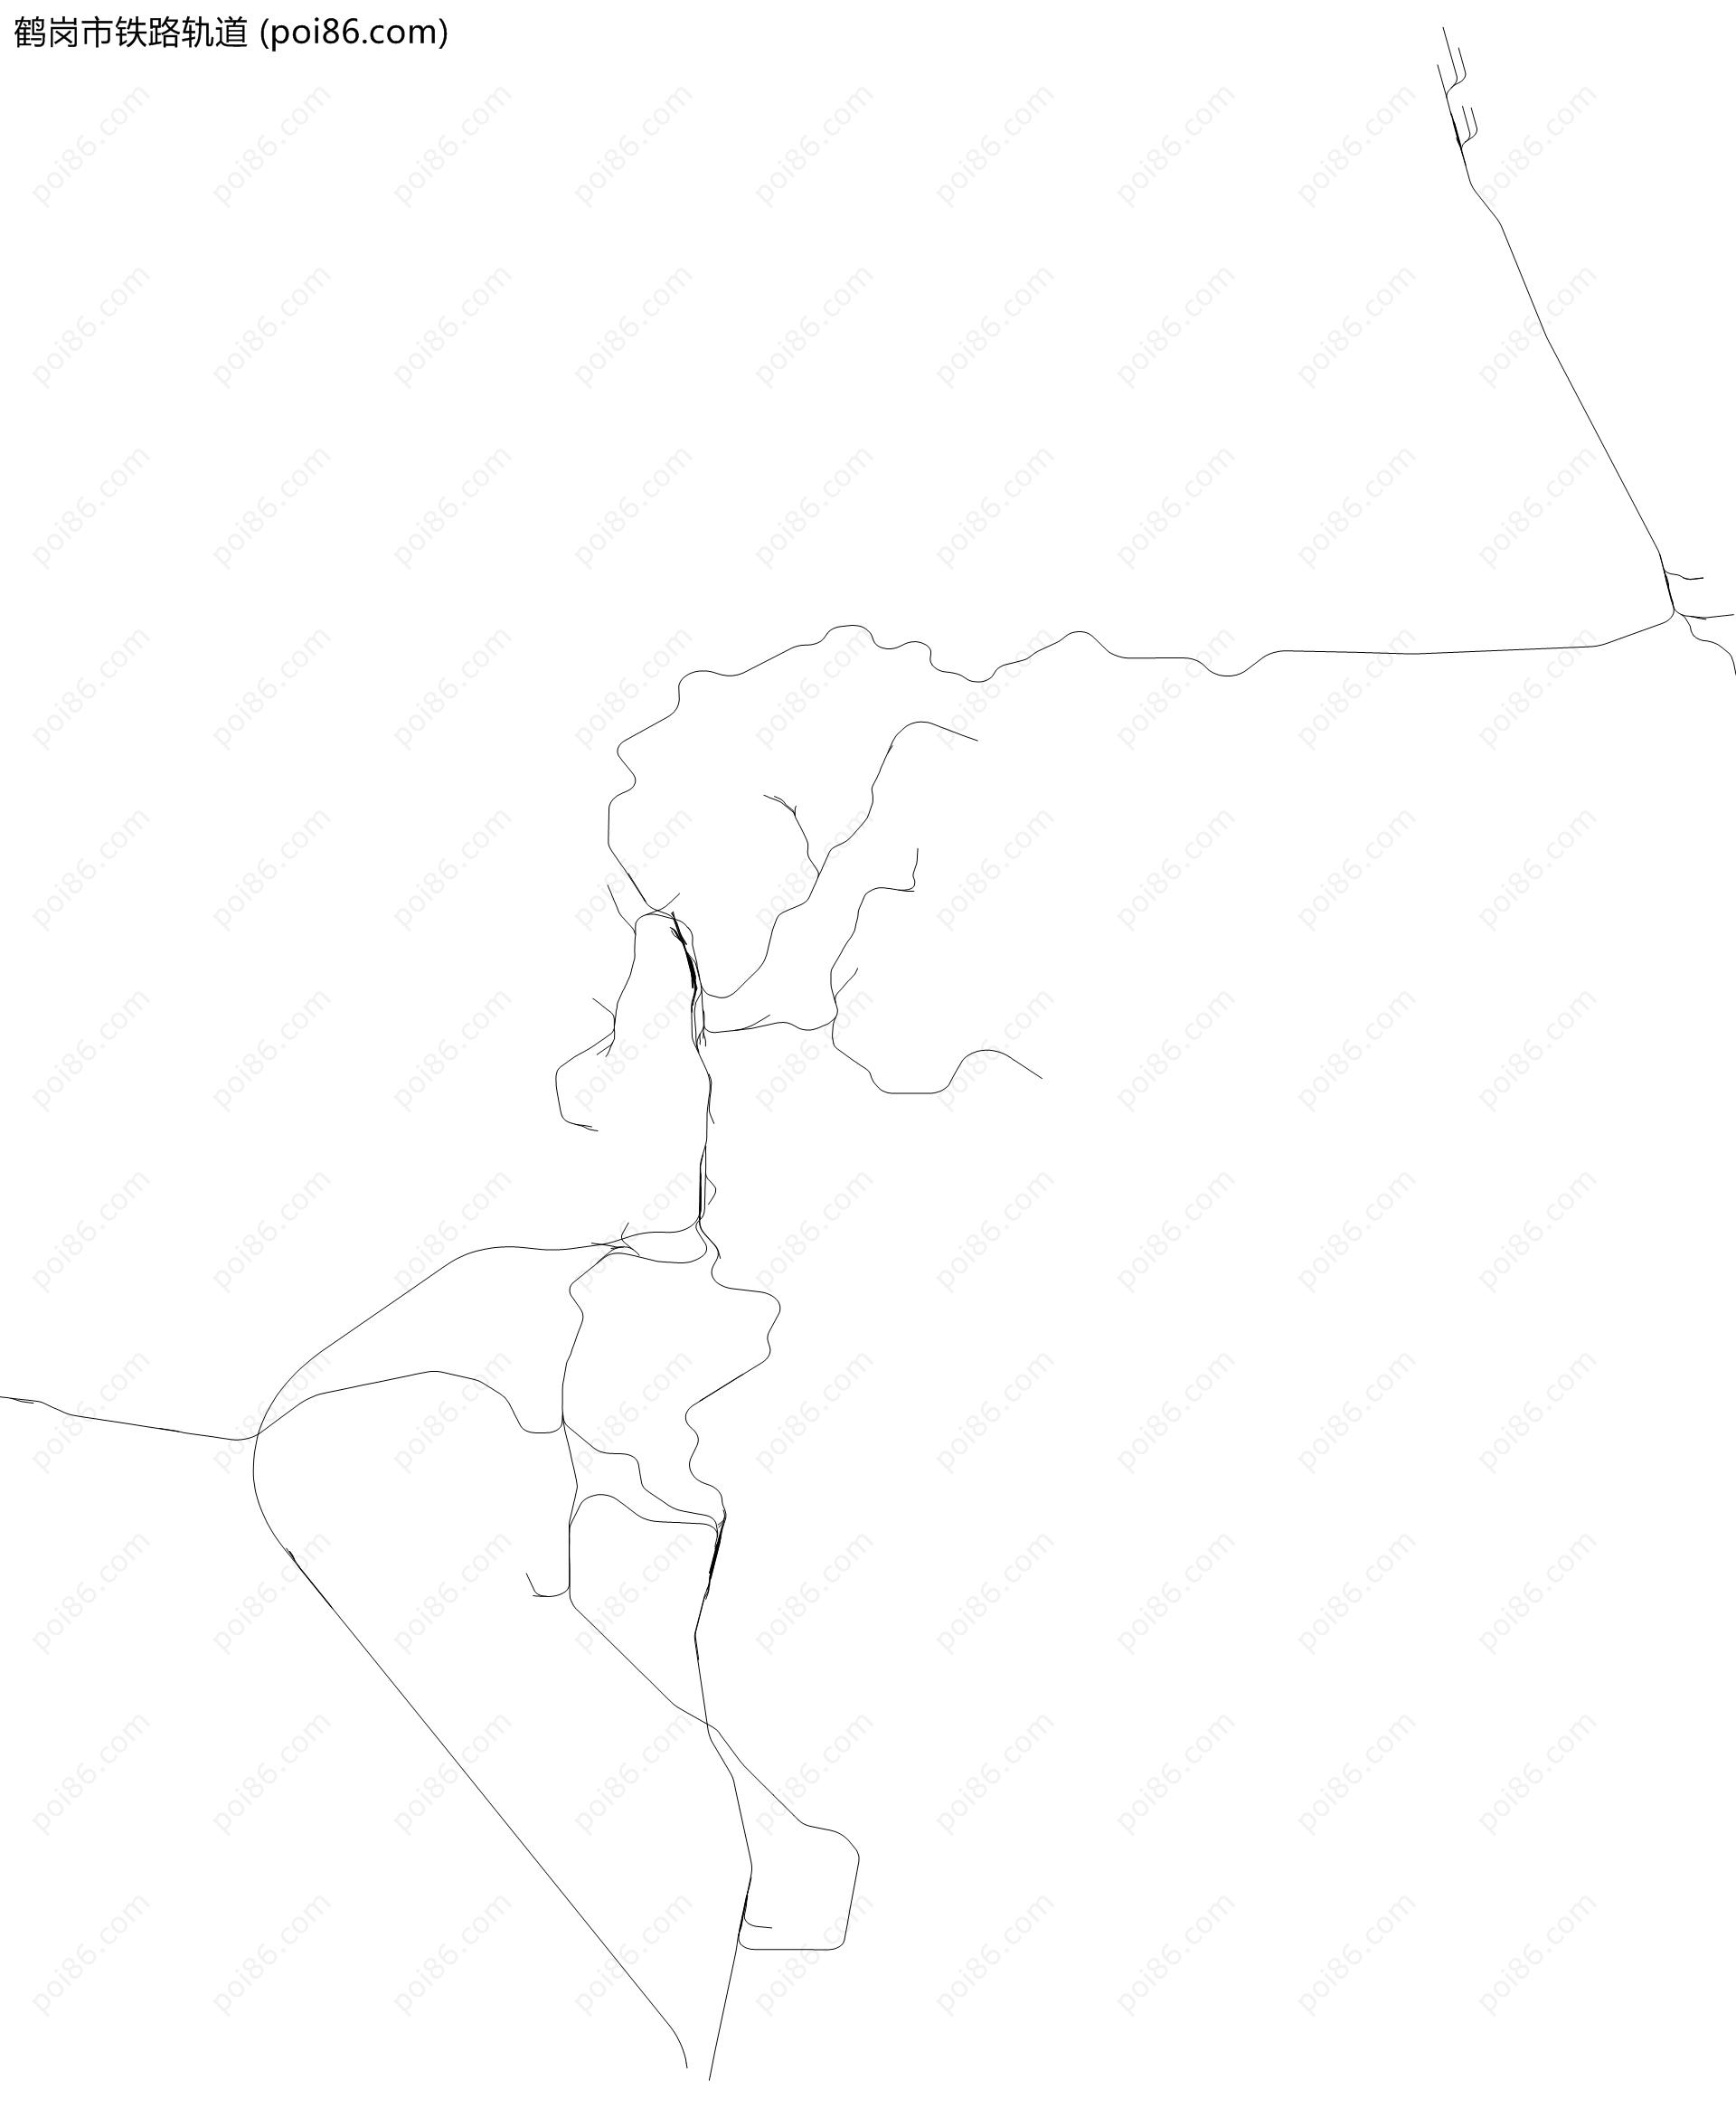 鹤岗市铁路轨道地图